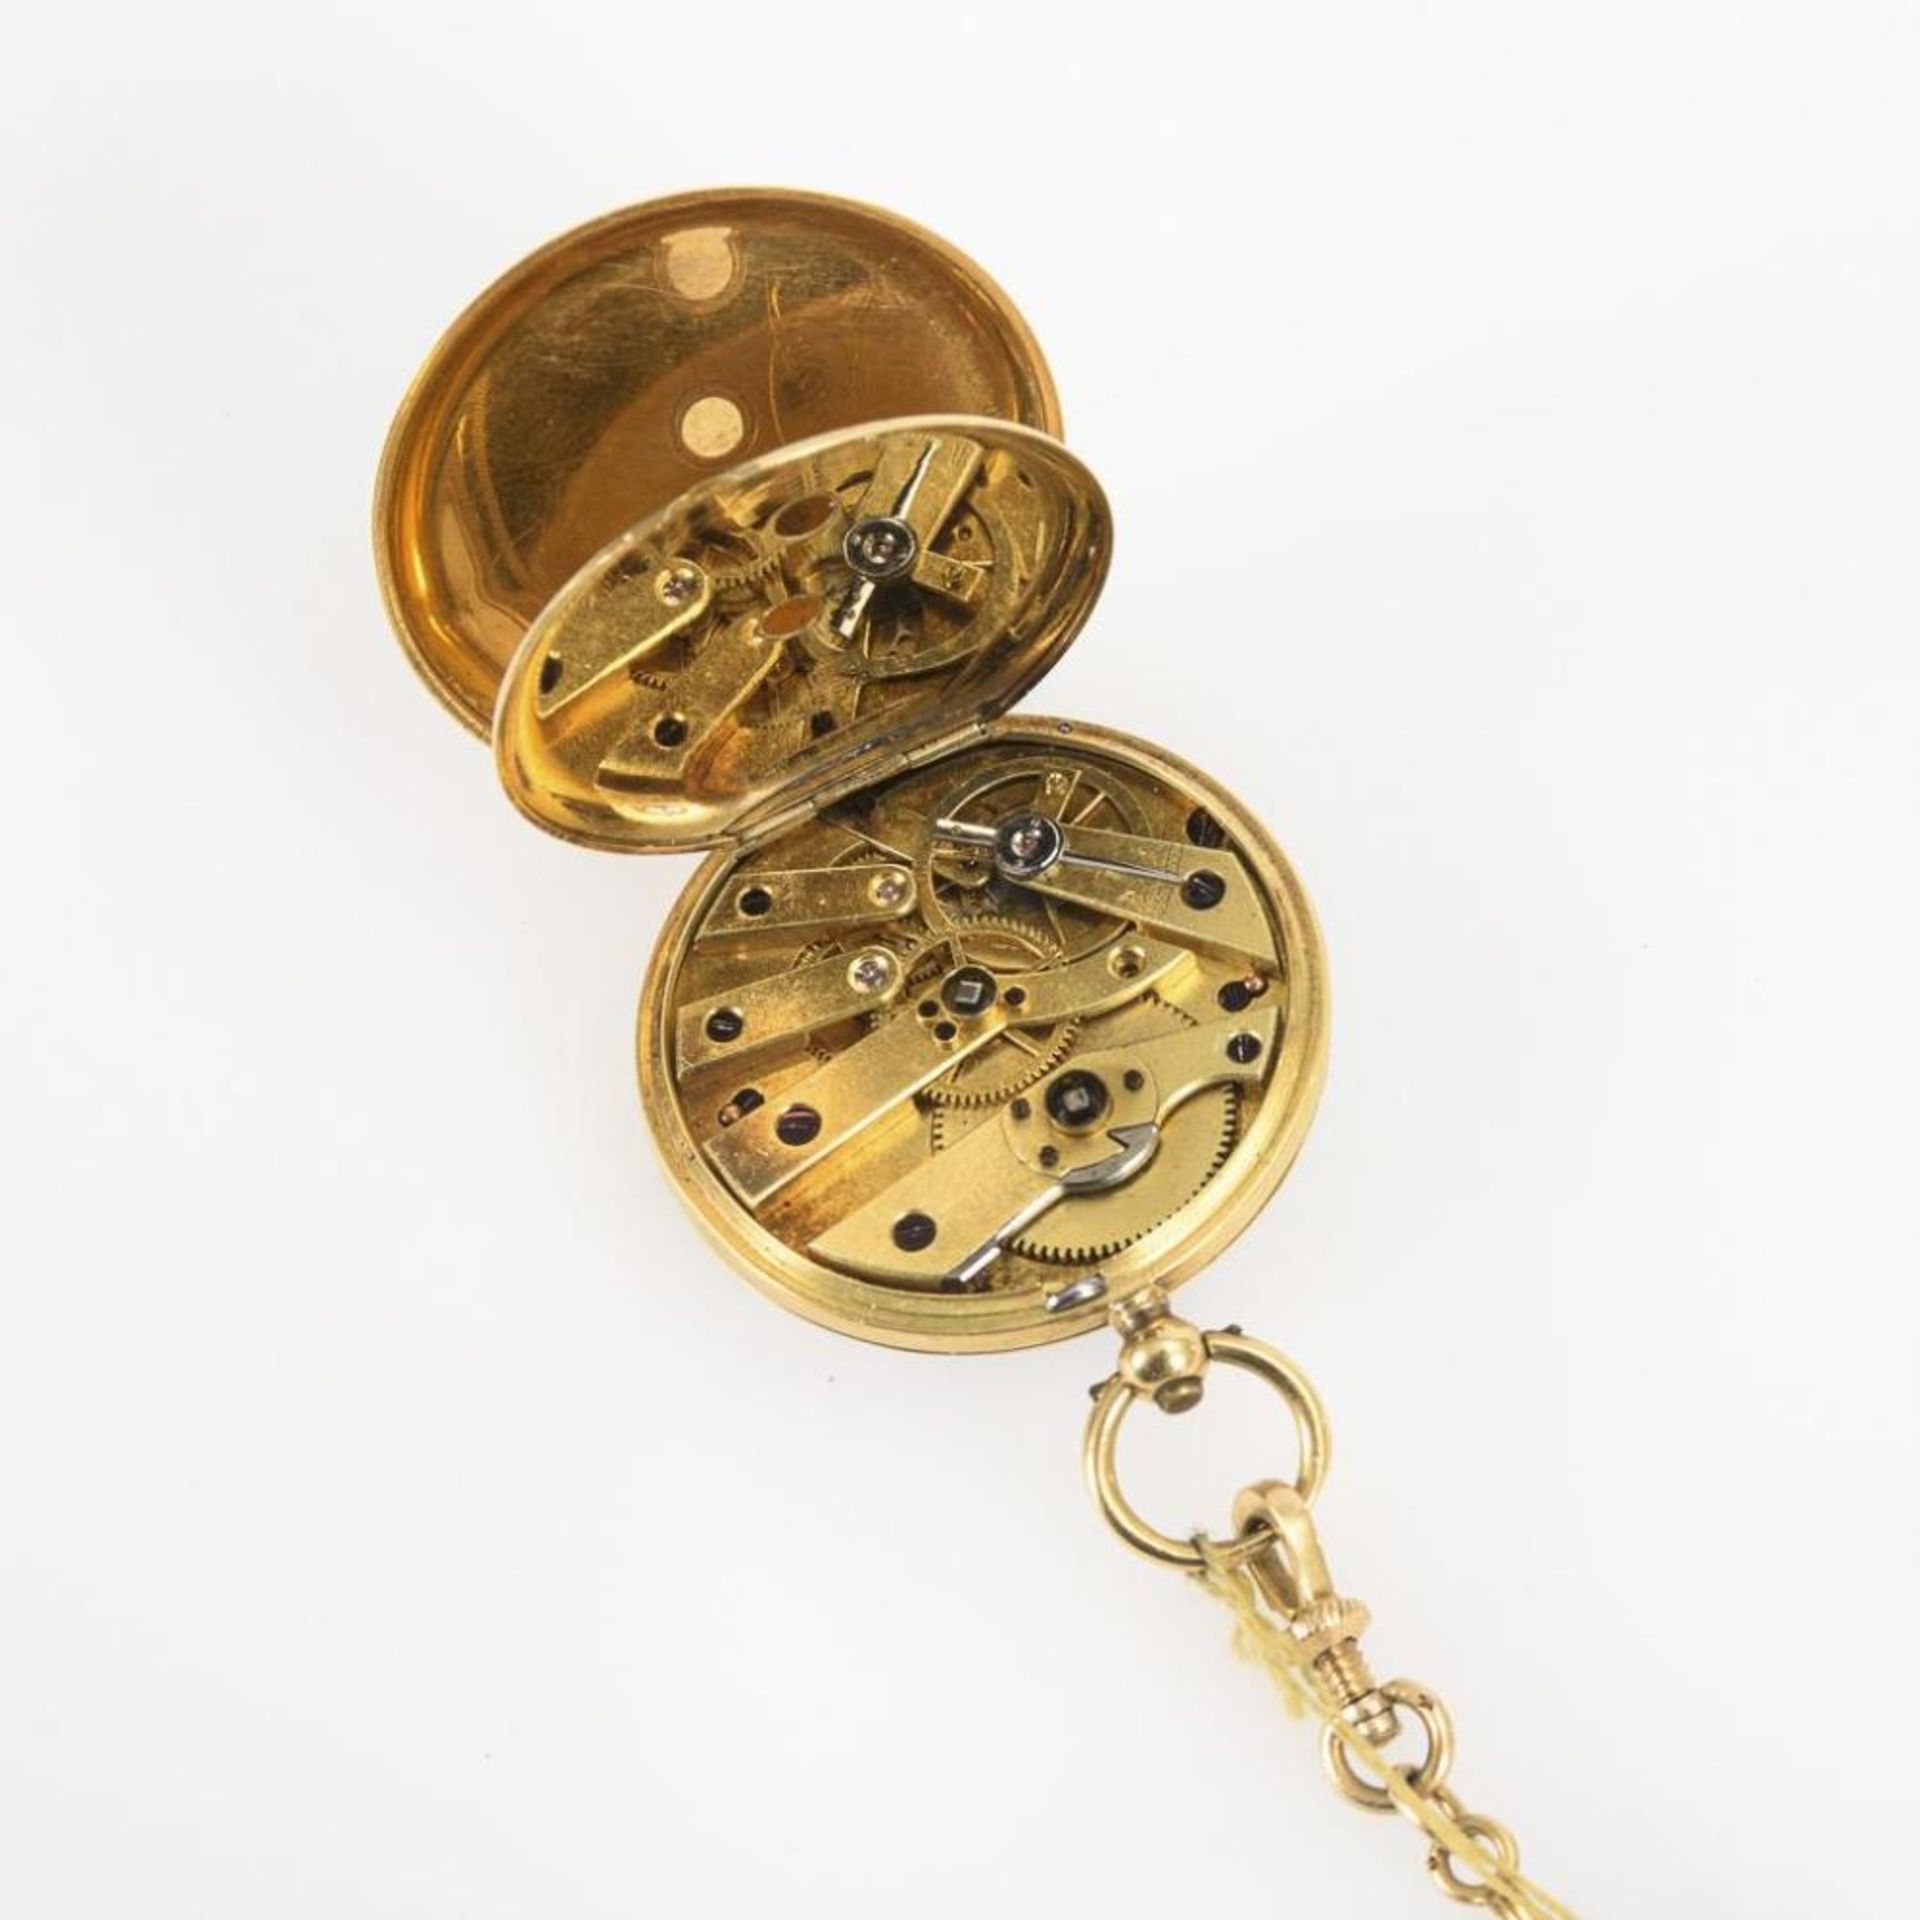 Goldene Damentaschenuhr an Uhrenkette. - Image 3 of 5